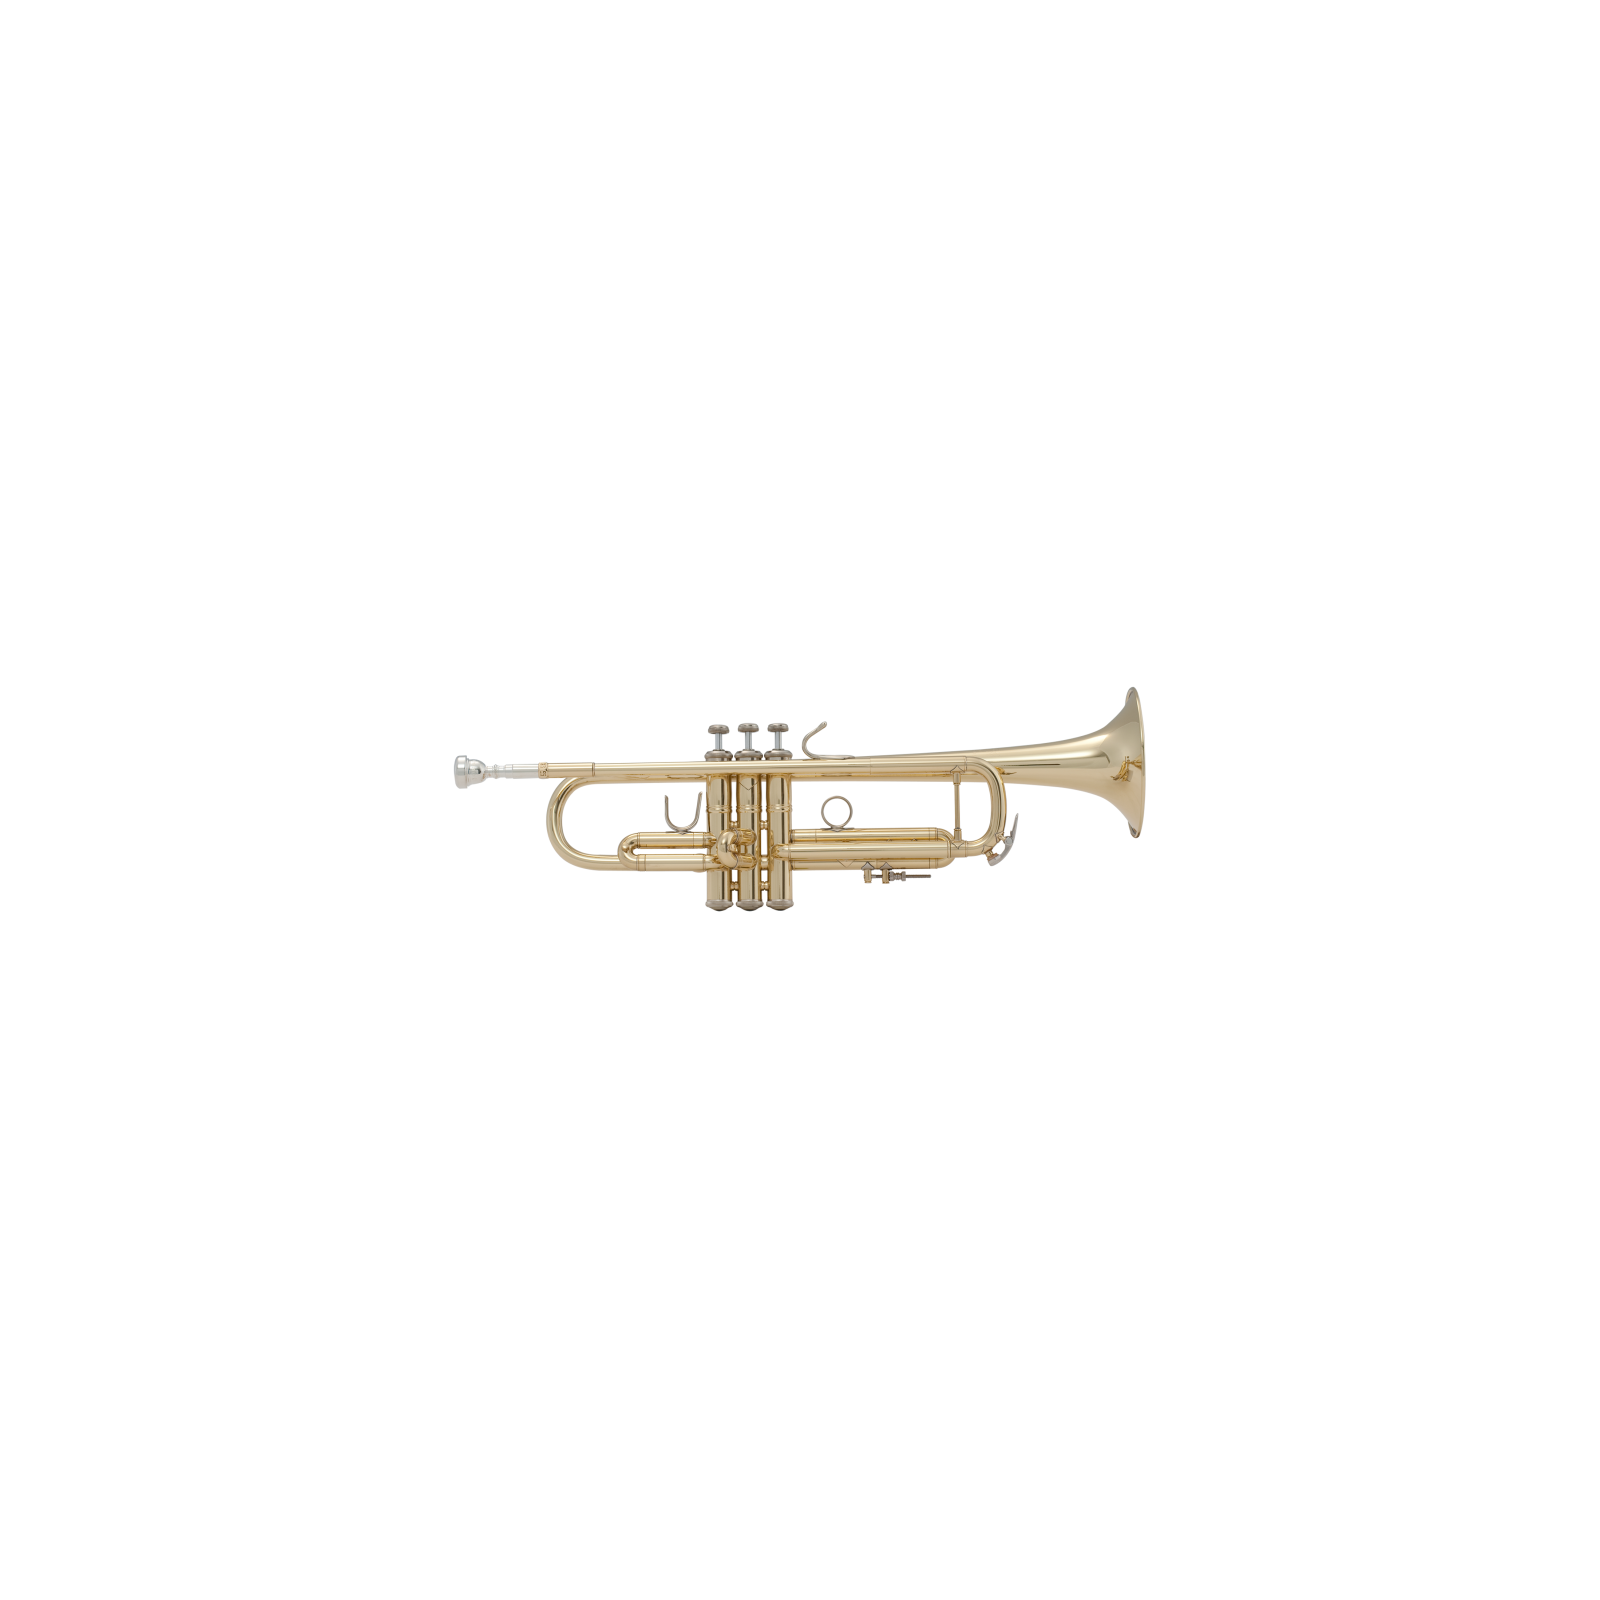 Ernie Williamson Music - Bach Trumpet Strad #37 Lacquer